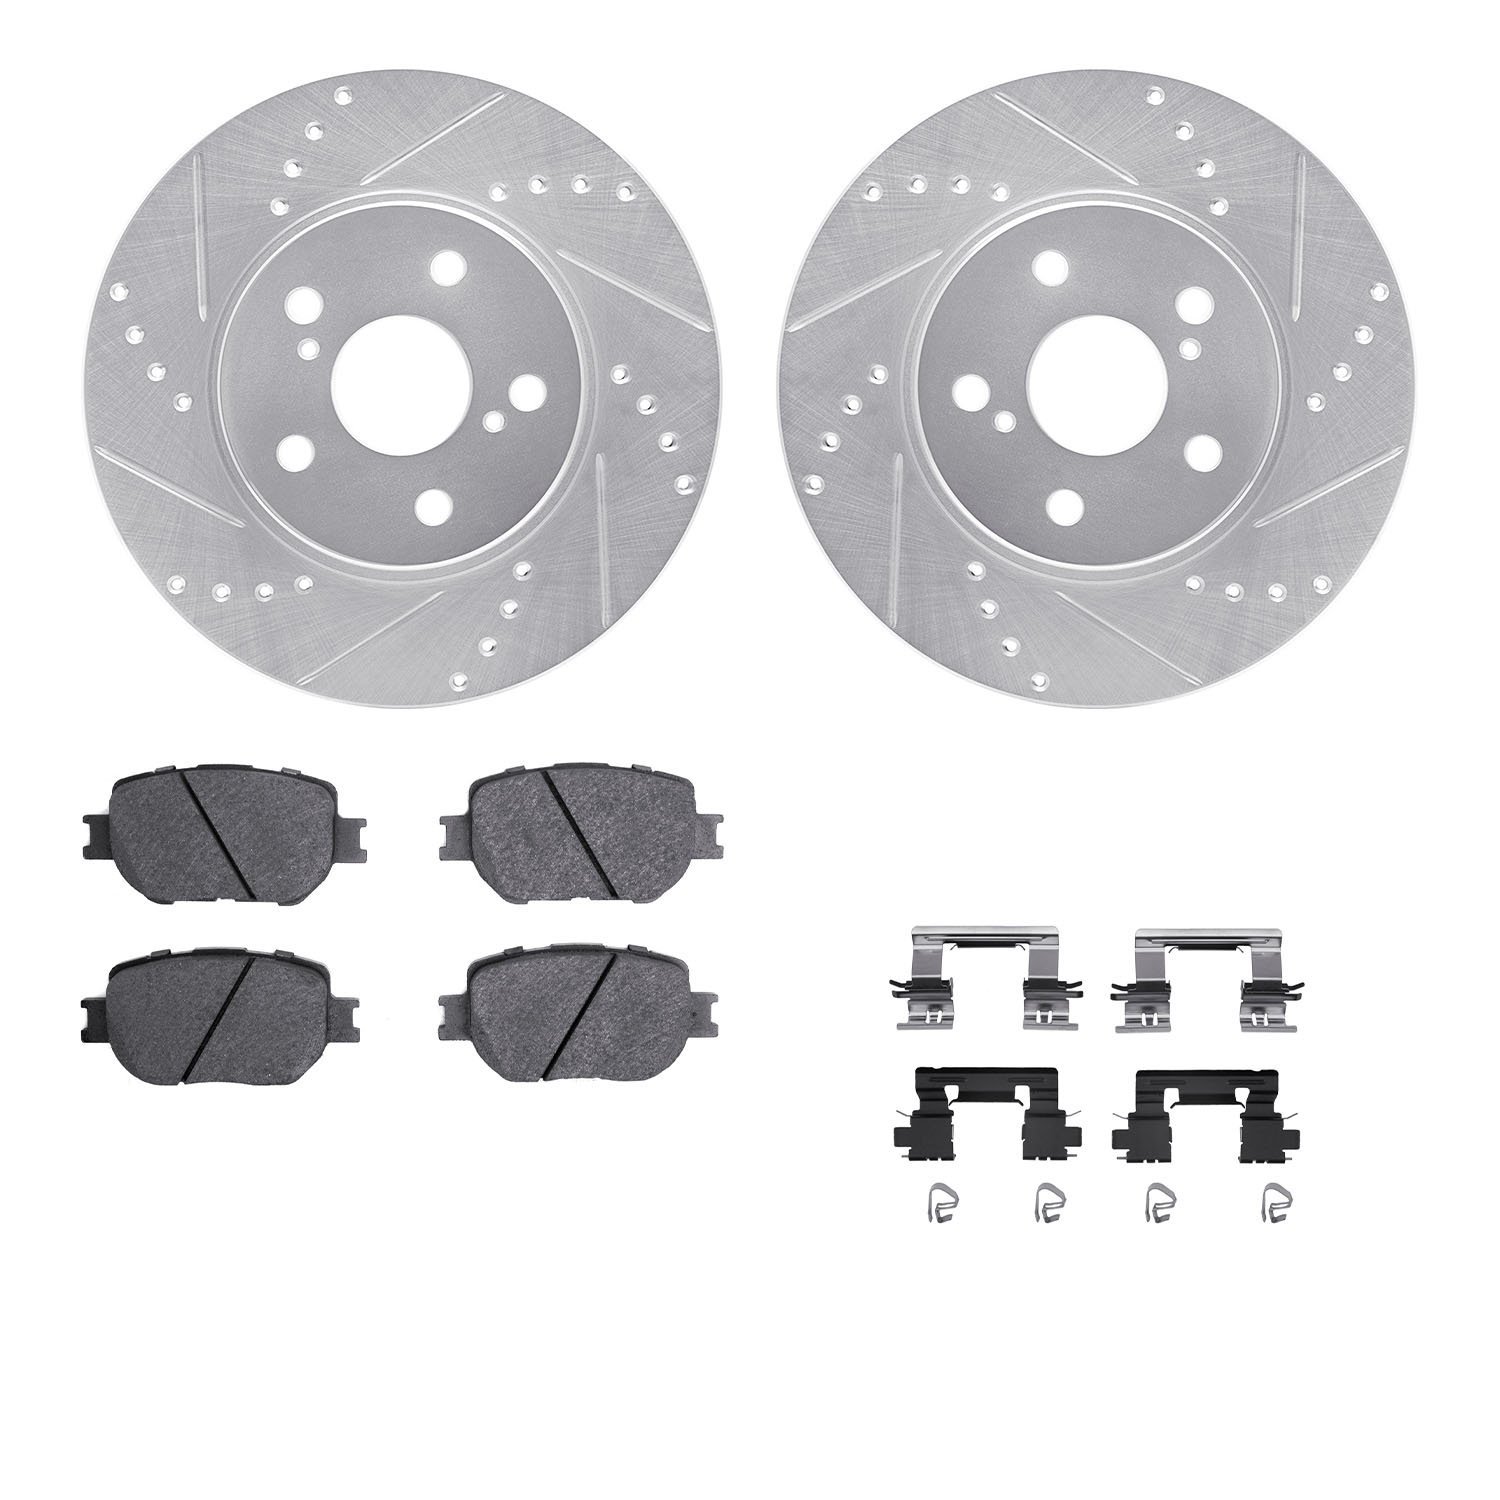 7312-76182 Drilled/Slotted Brake Rotor with 3000-Series Ceramic Brake Pads Kit & Hardware [Silver], 2014-2015 Lexus/Toyota/Scion